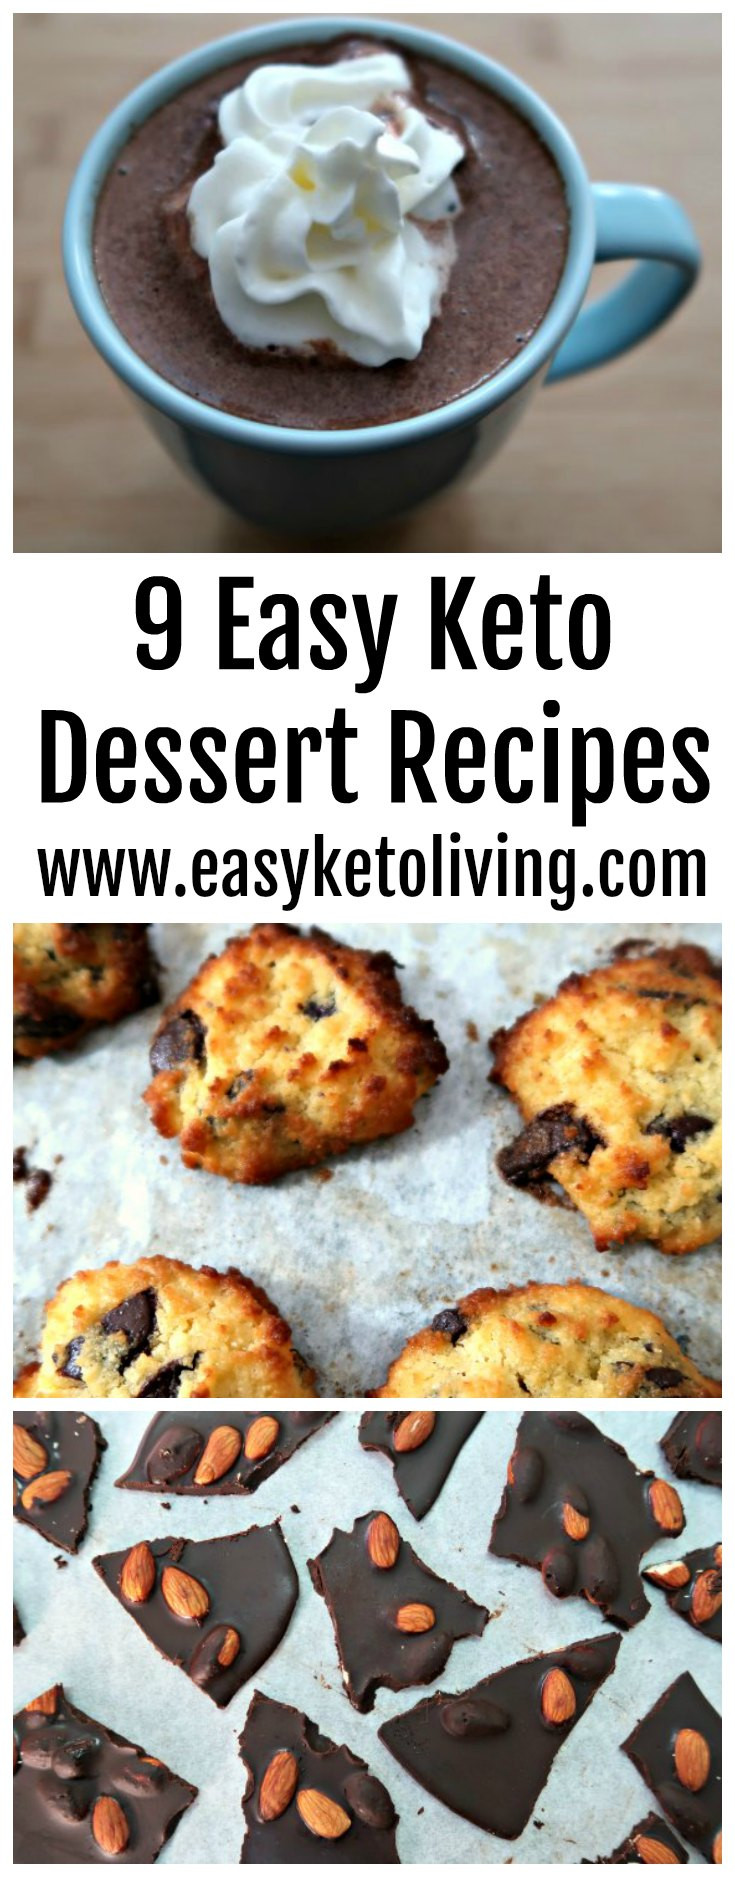 Keto Dessert Recipes Easy Quick
 9 Easy Keto Dessert Recipes Quick Low Carb Ketogenic